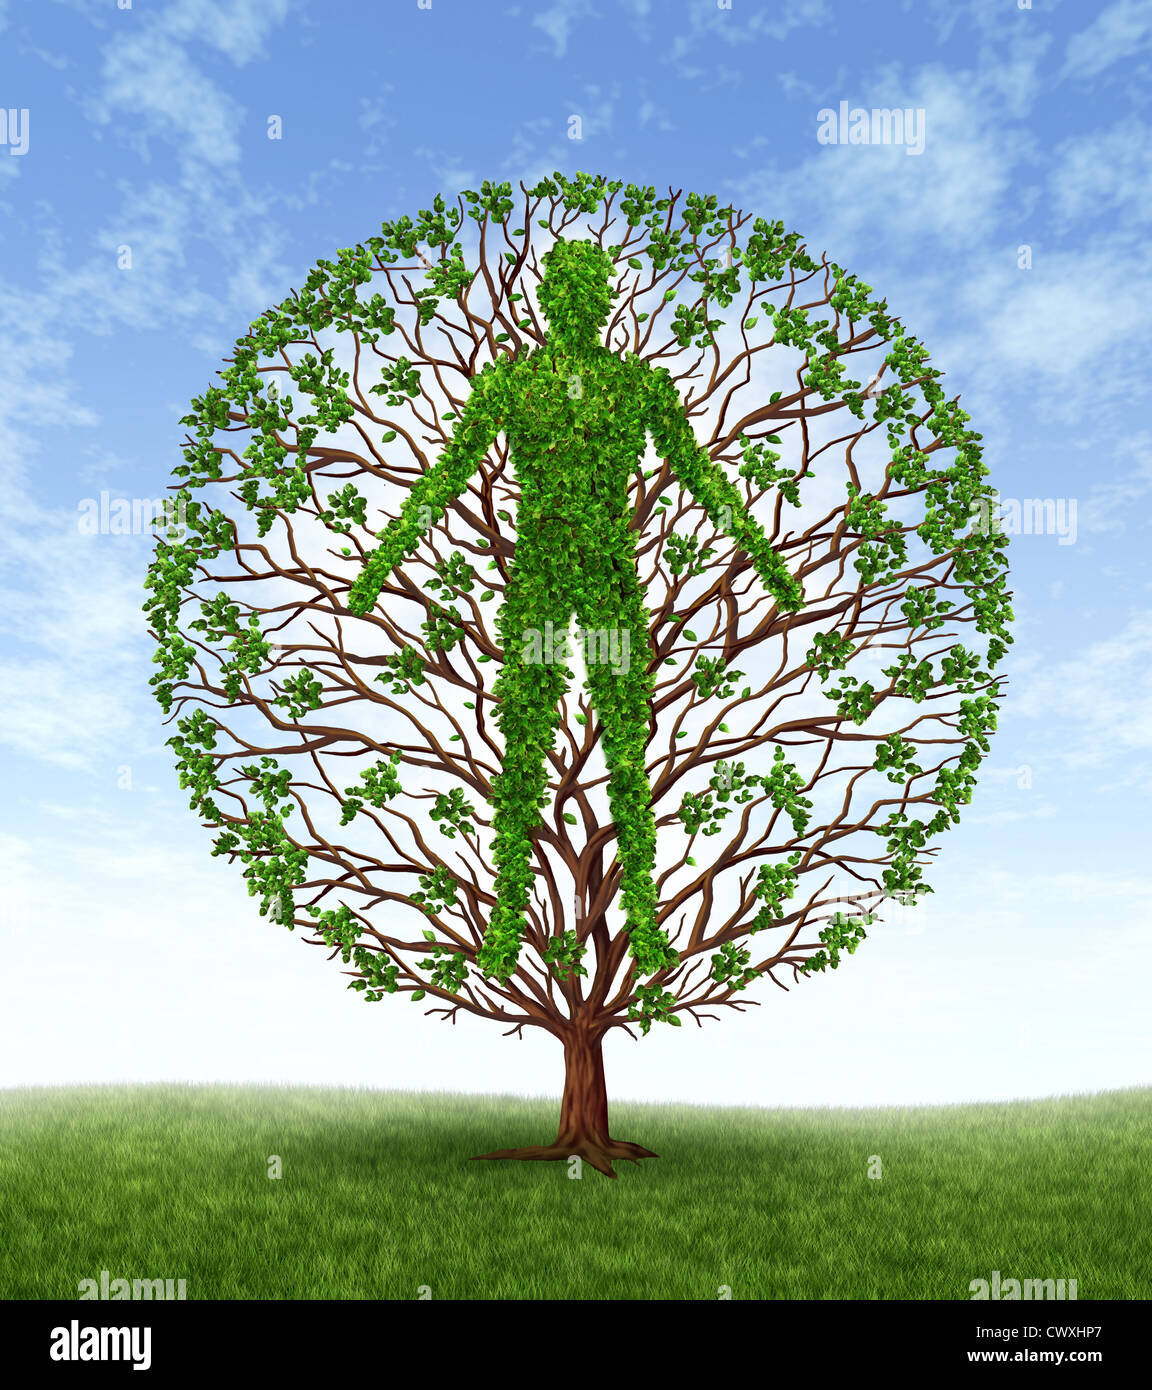 Menschliches Wachstum und Entwicklung und Persönlichkeitsentwicklung als medizinische Symbol der Gesundheit als ein Baum mit Ästen und grünen Blättern Stockfoto